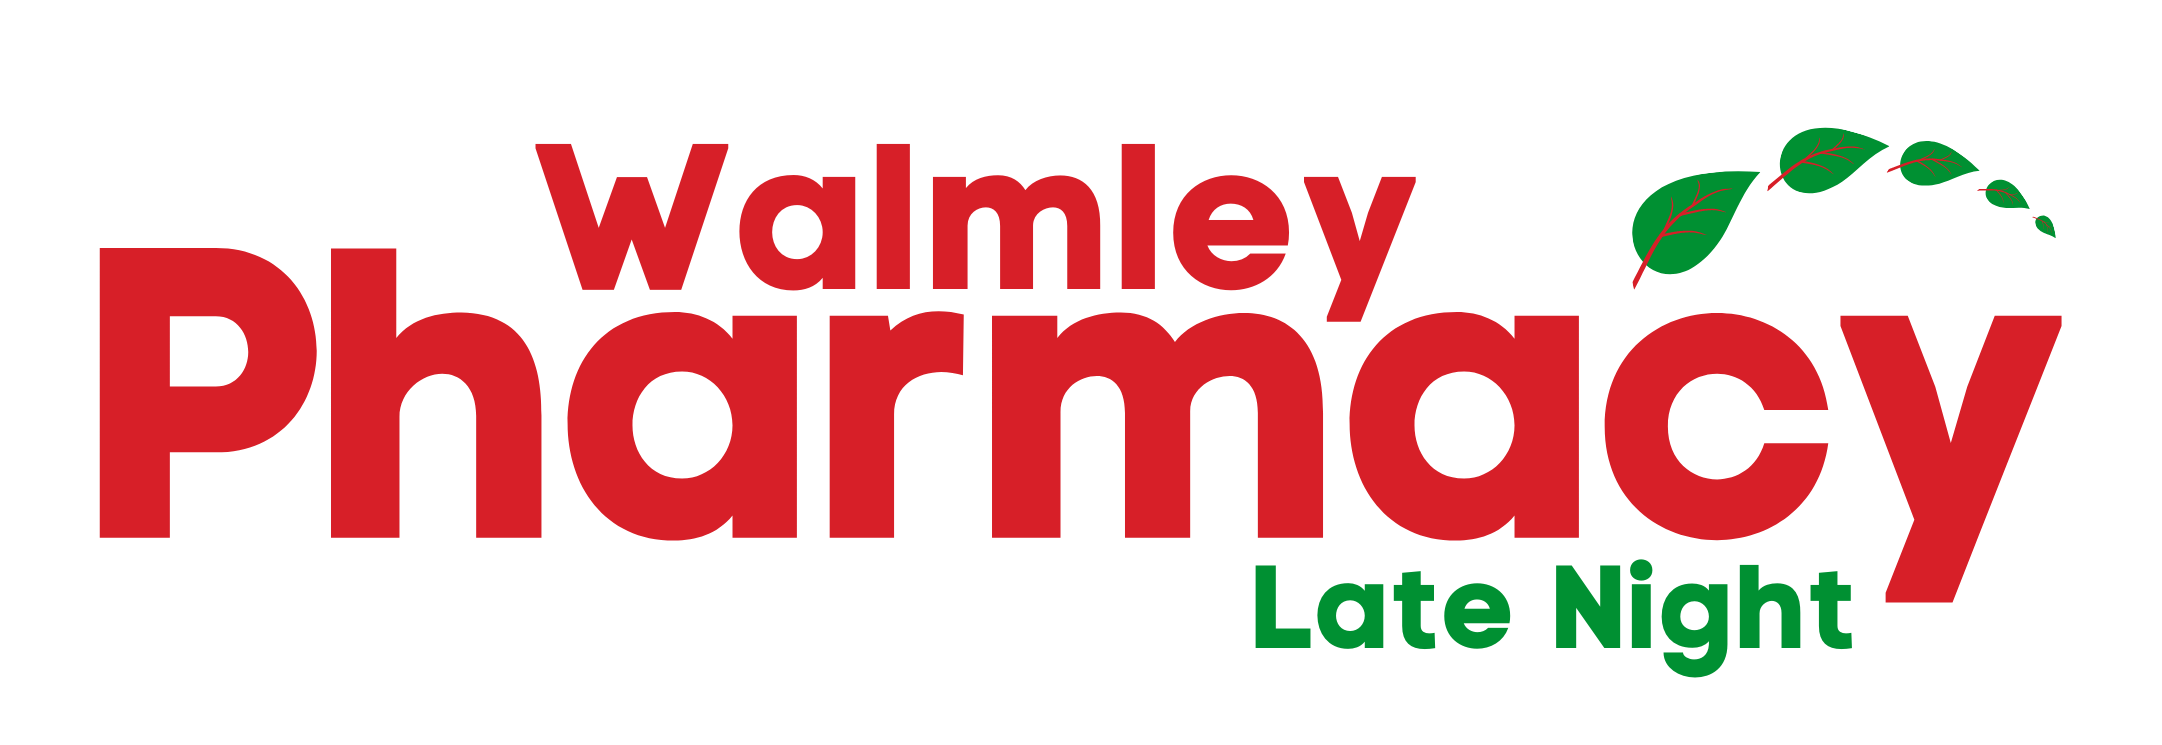 Walmley Pharmacy Logo